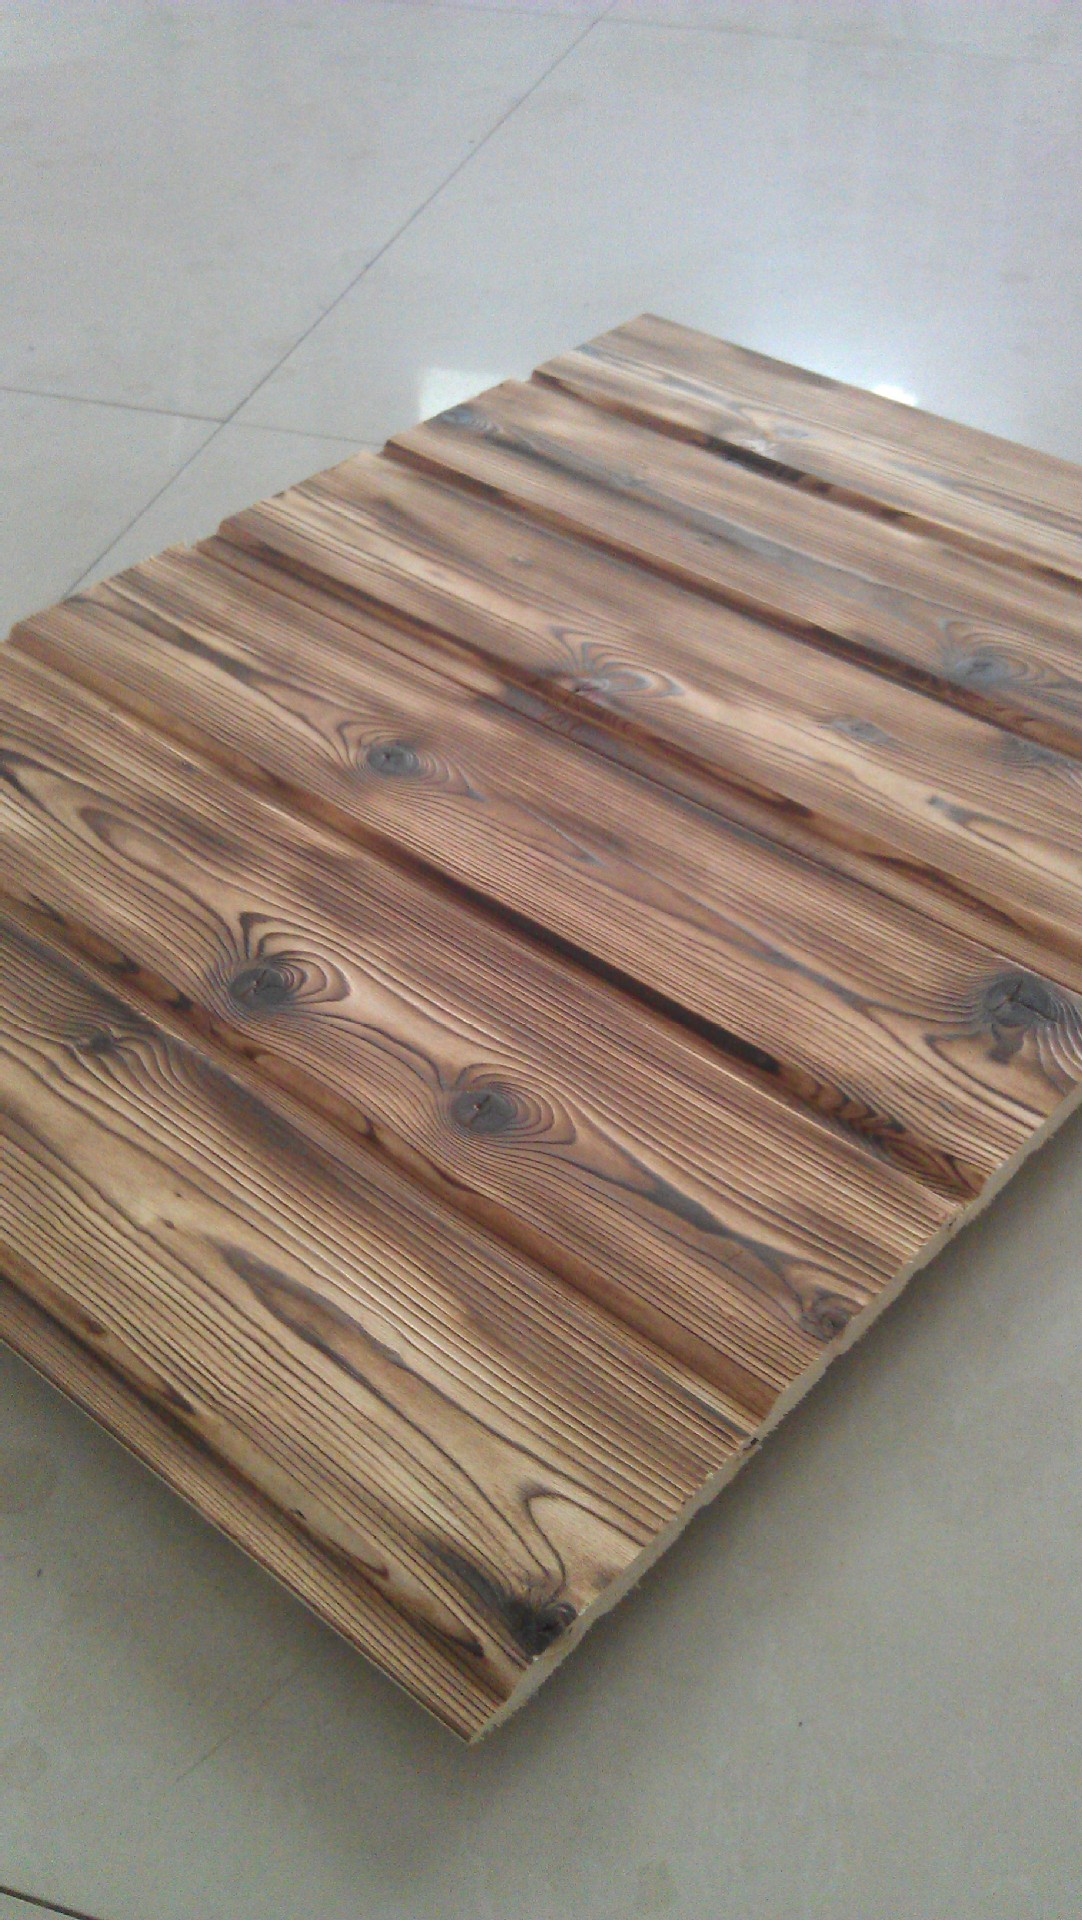 炭化木扣板 实木扣板 墙面板 吊顶木扣板 木屋木扣板 异形扣板